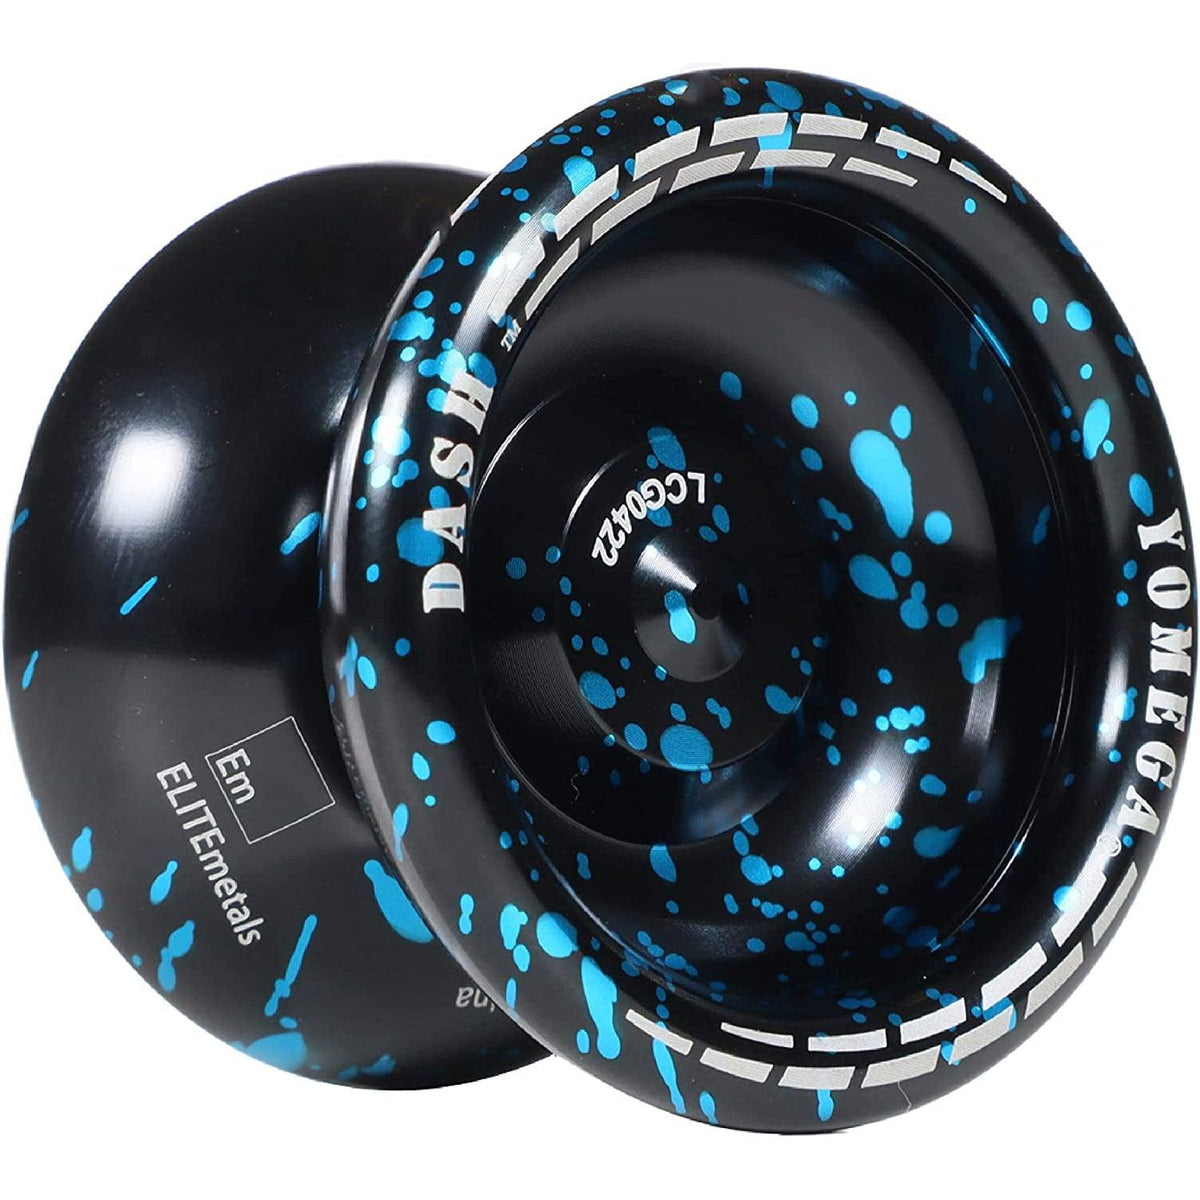 Front view of blue and black Dash Pro Level Elite Metal Yo-Yo.